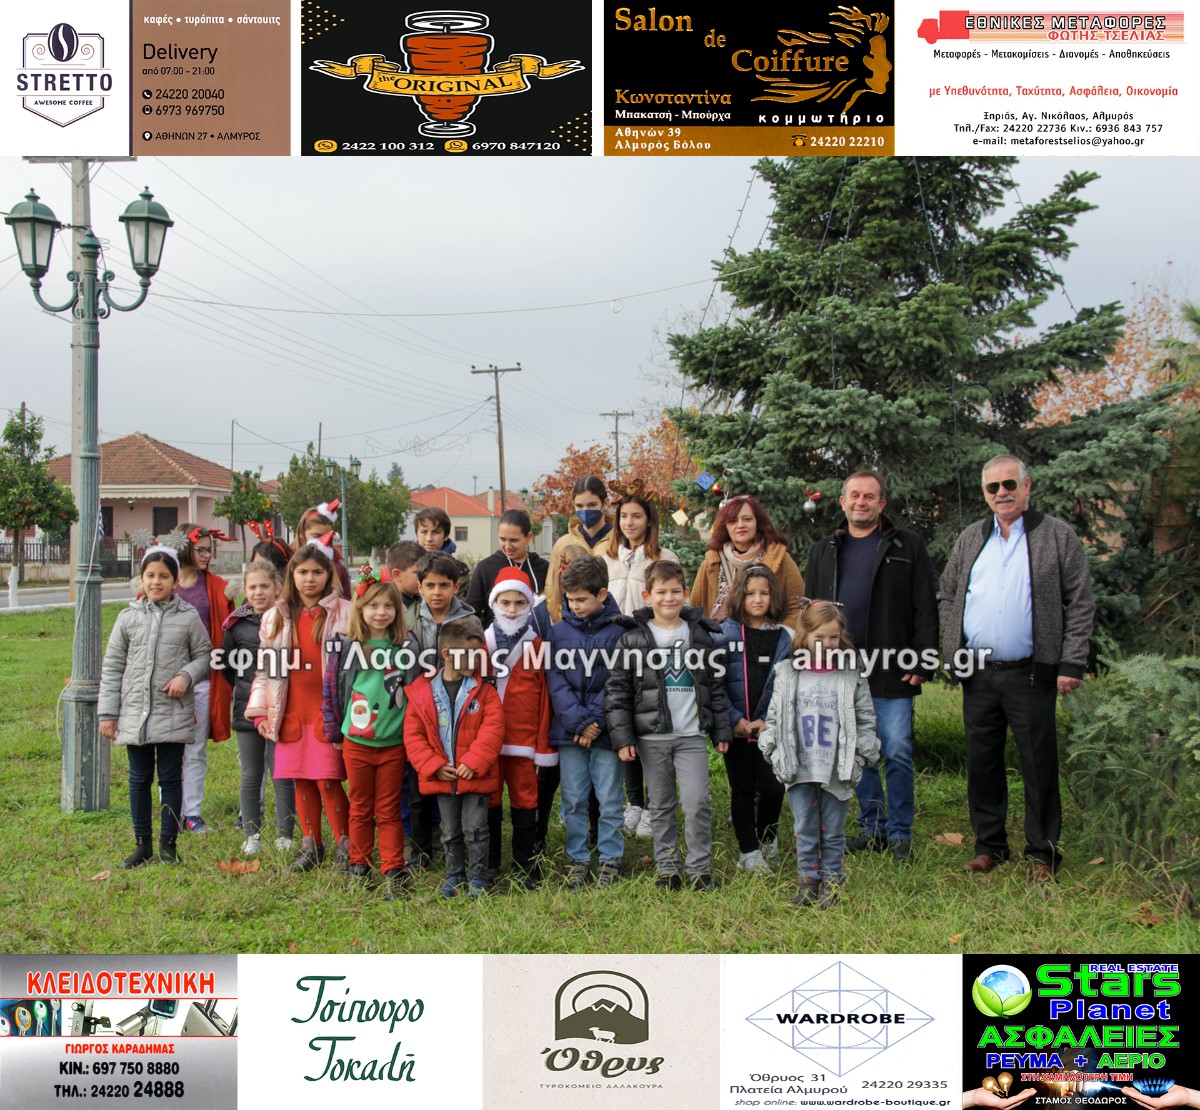 Εικόνες και βίντεο από τη φωταγώγηση του Χριστουγεννιάτικου δένδρου στην Ευξεινούπολη